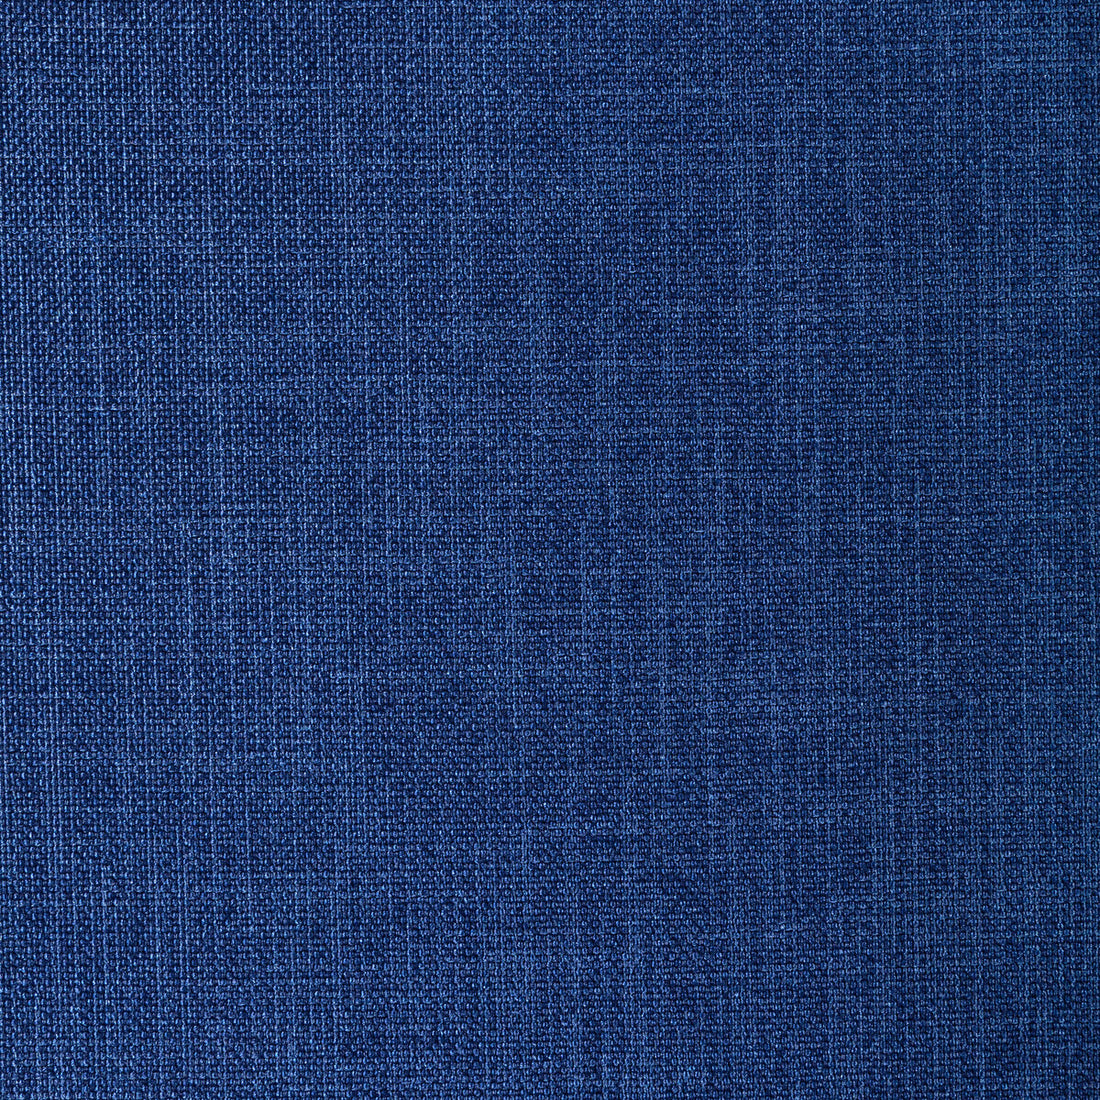 Kravet Basics fabric in 33120-555 color - pattern 33120.555.0 - by Kravet Basics